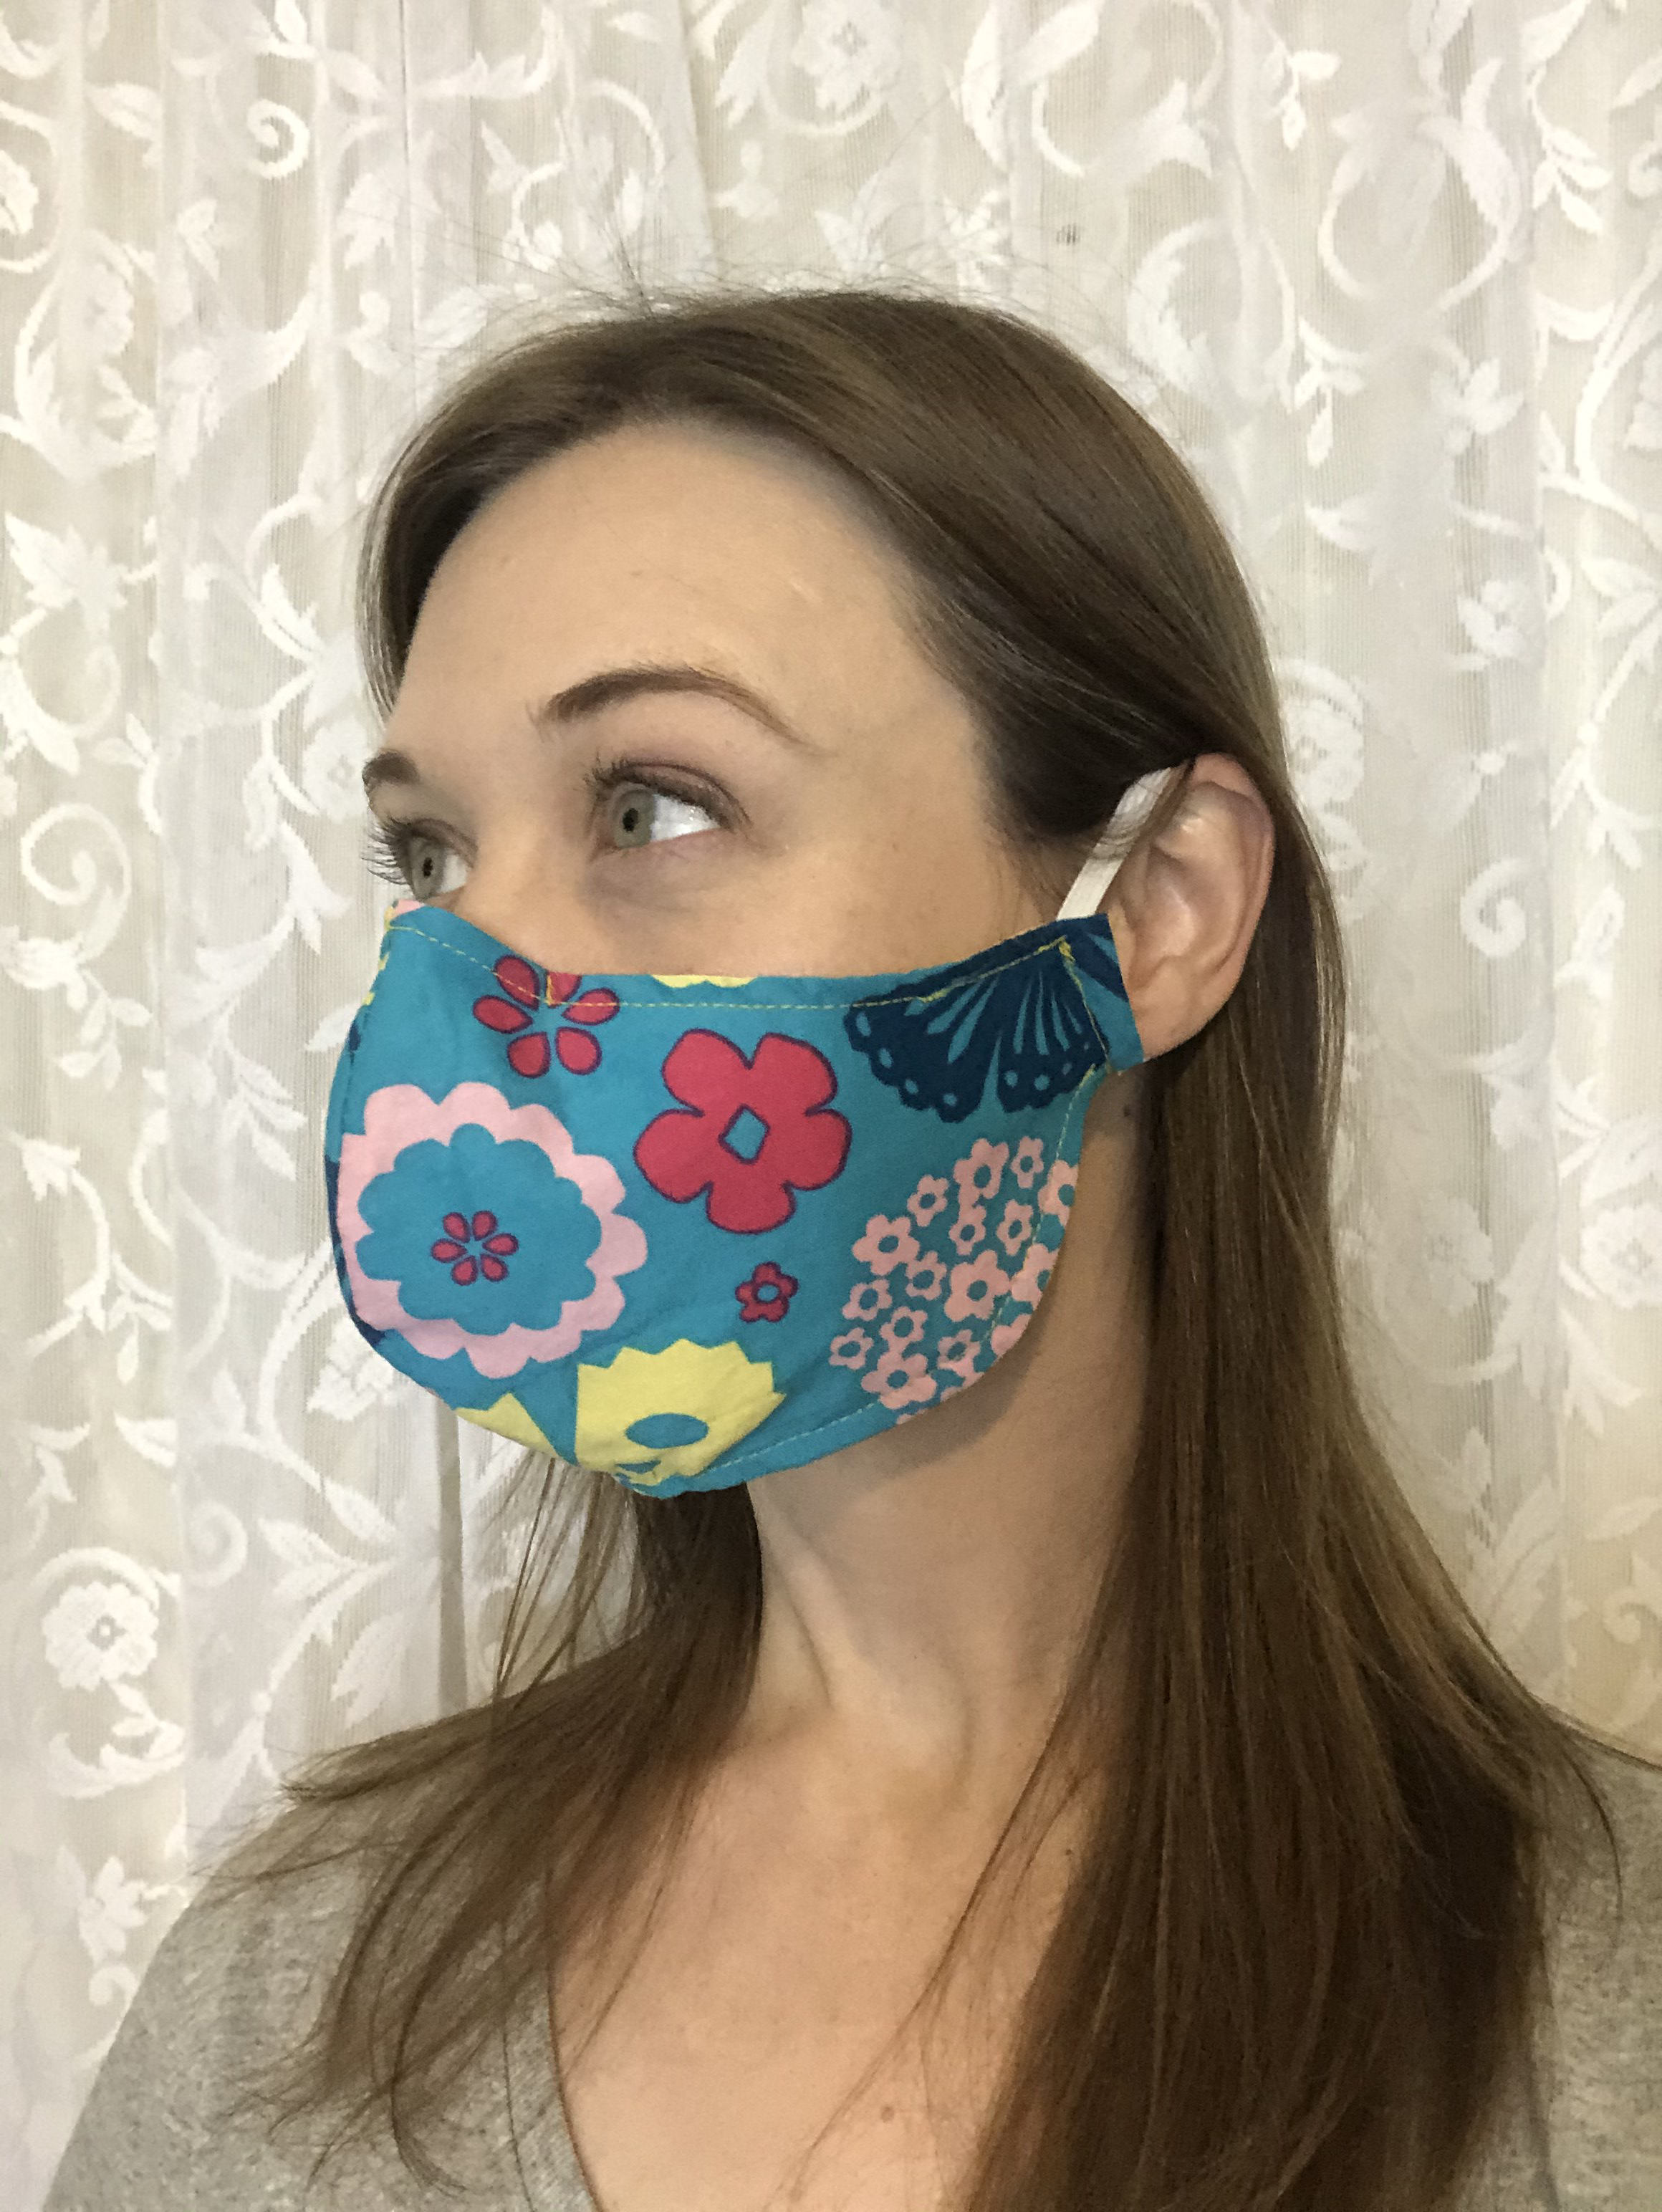 Crafting Masks for Hospitals